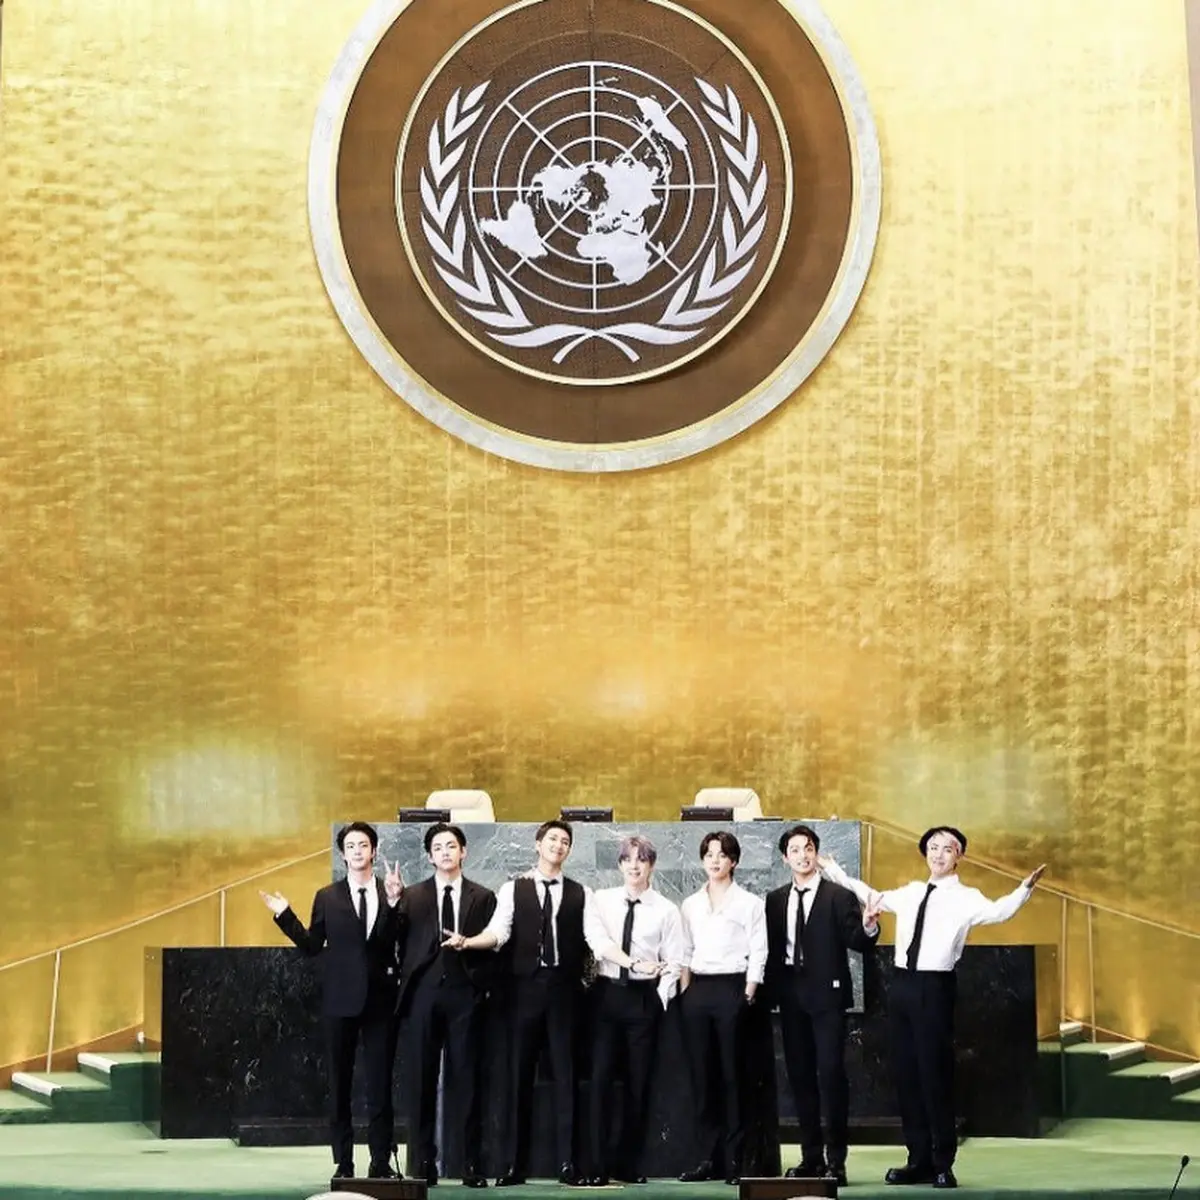 Harga Jam Tangan RM dan Jimin BTS yang Dikenakan di Sidang PBB Bernilai  Miliaran - Fashion